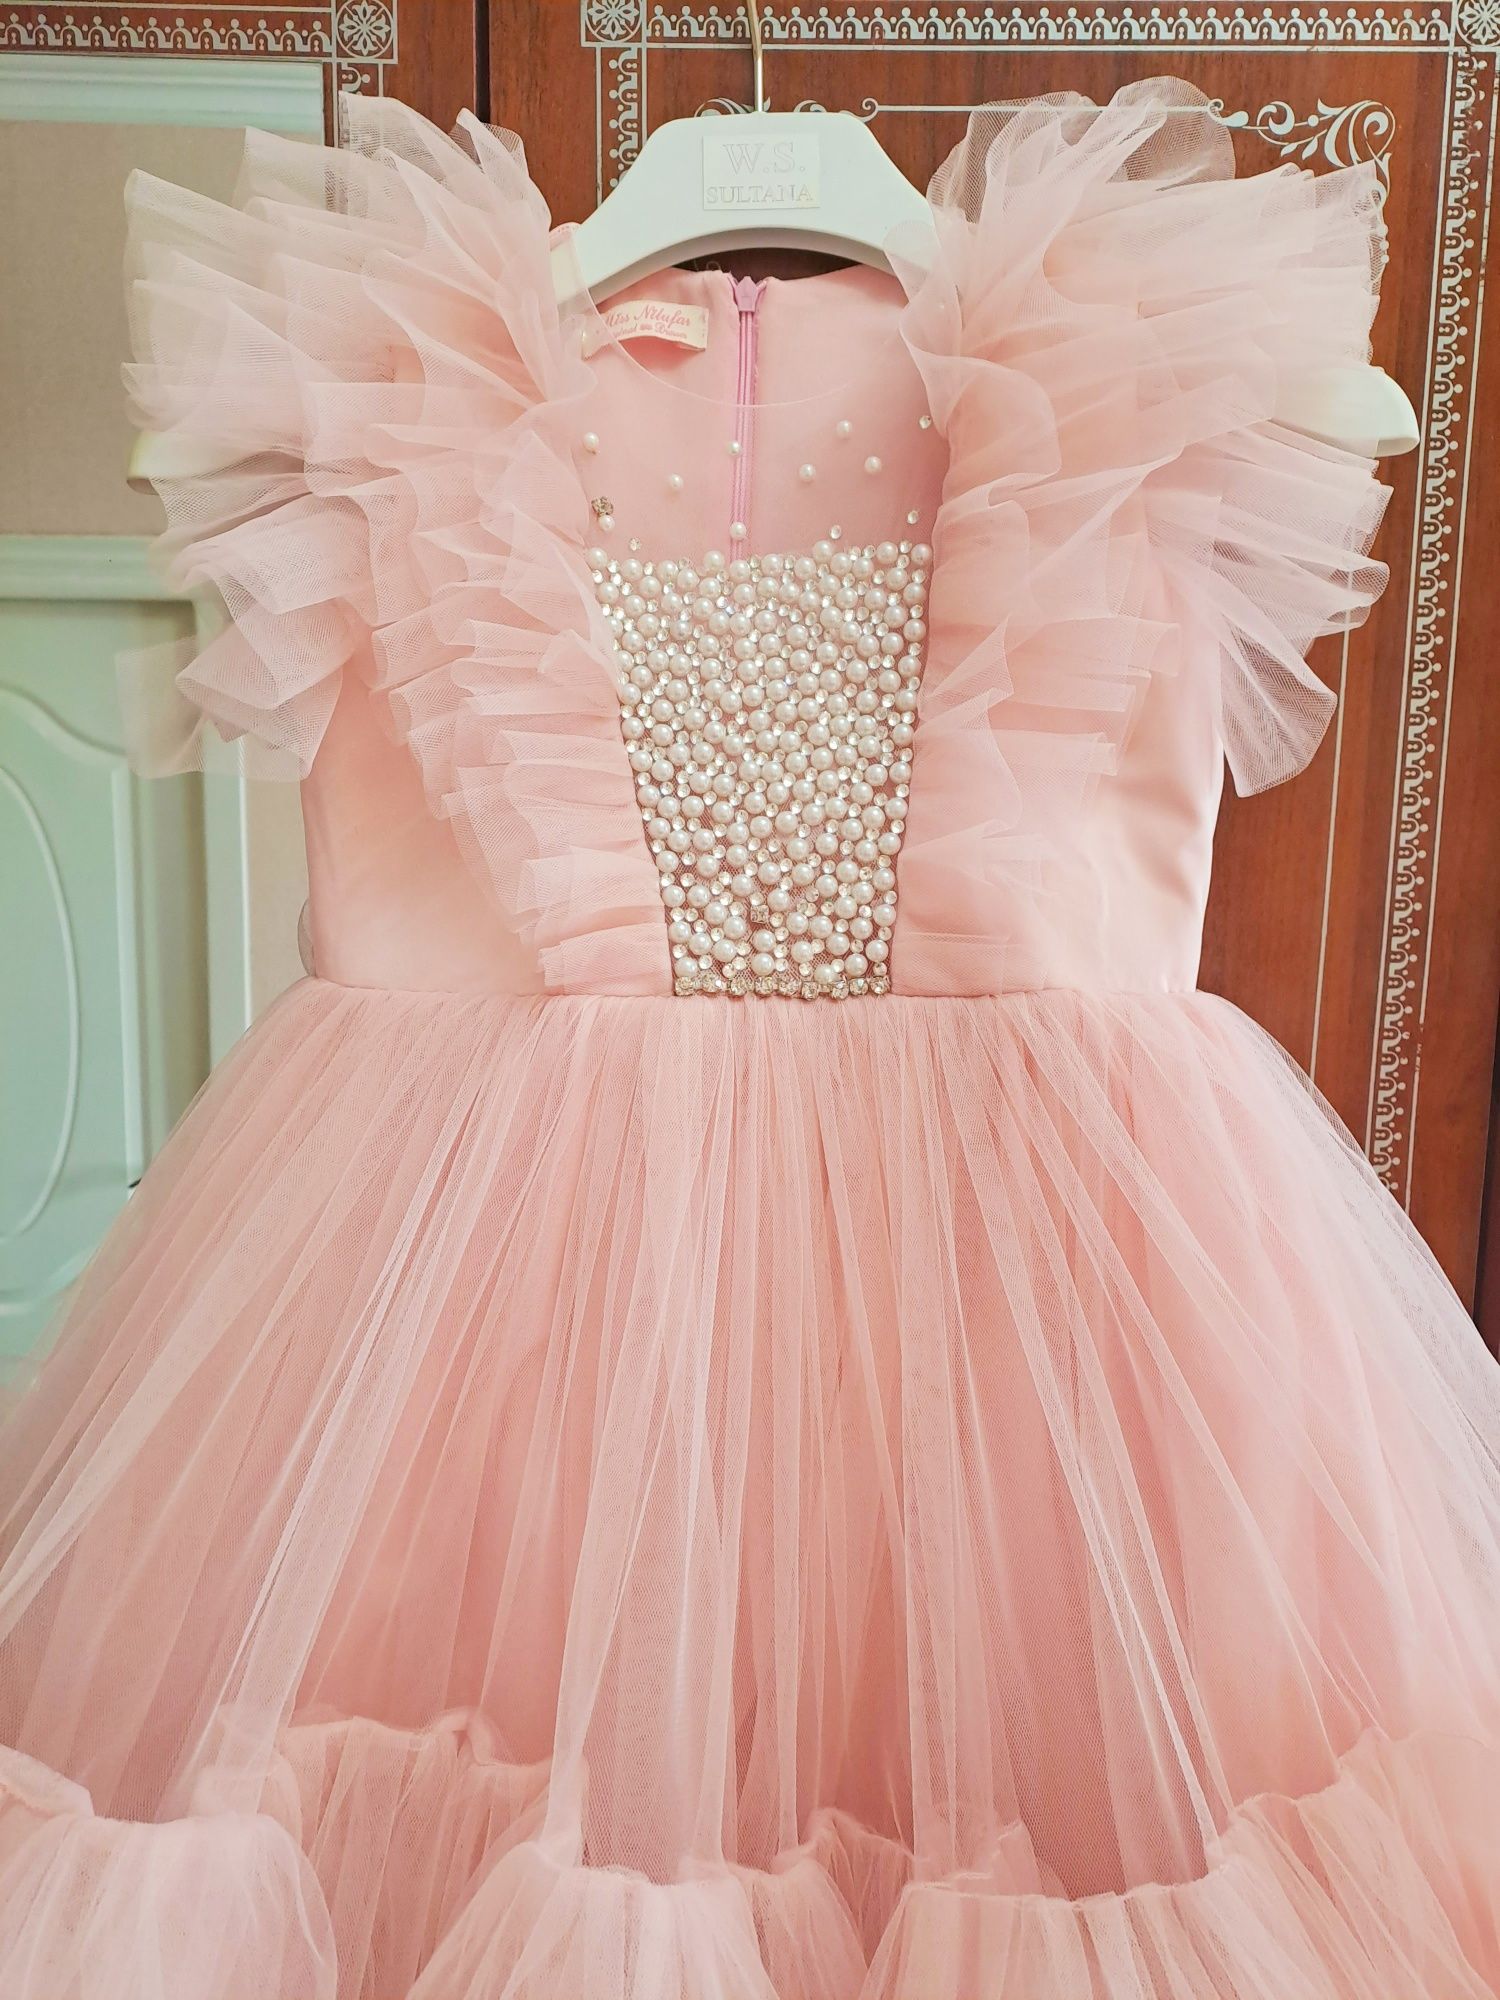 Платье принцессы, Барби, мега пушистое